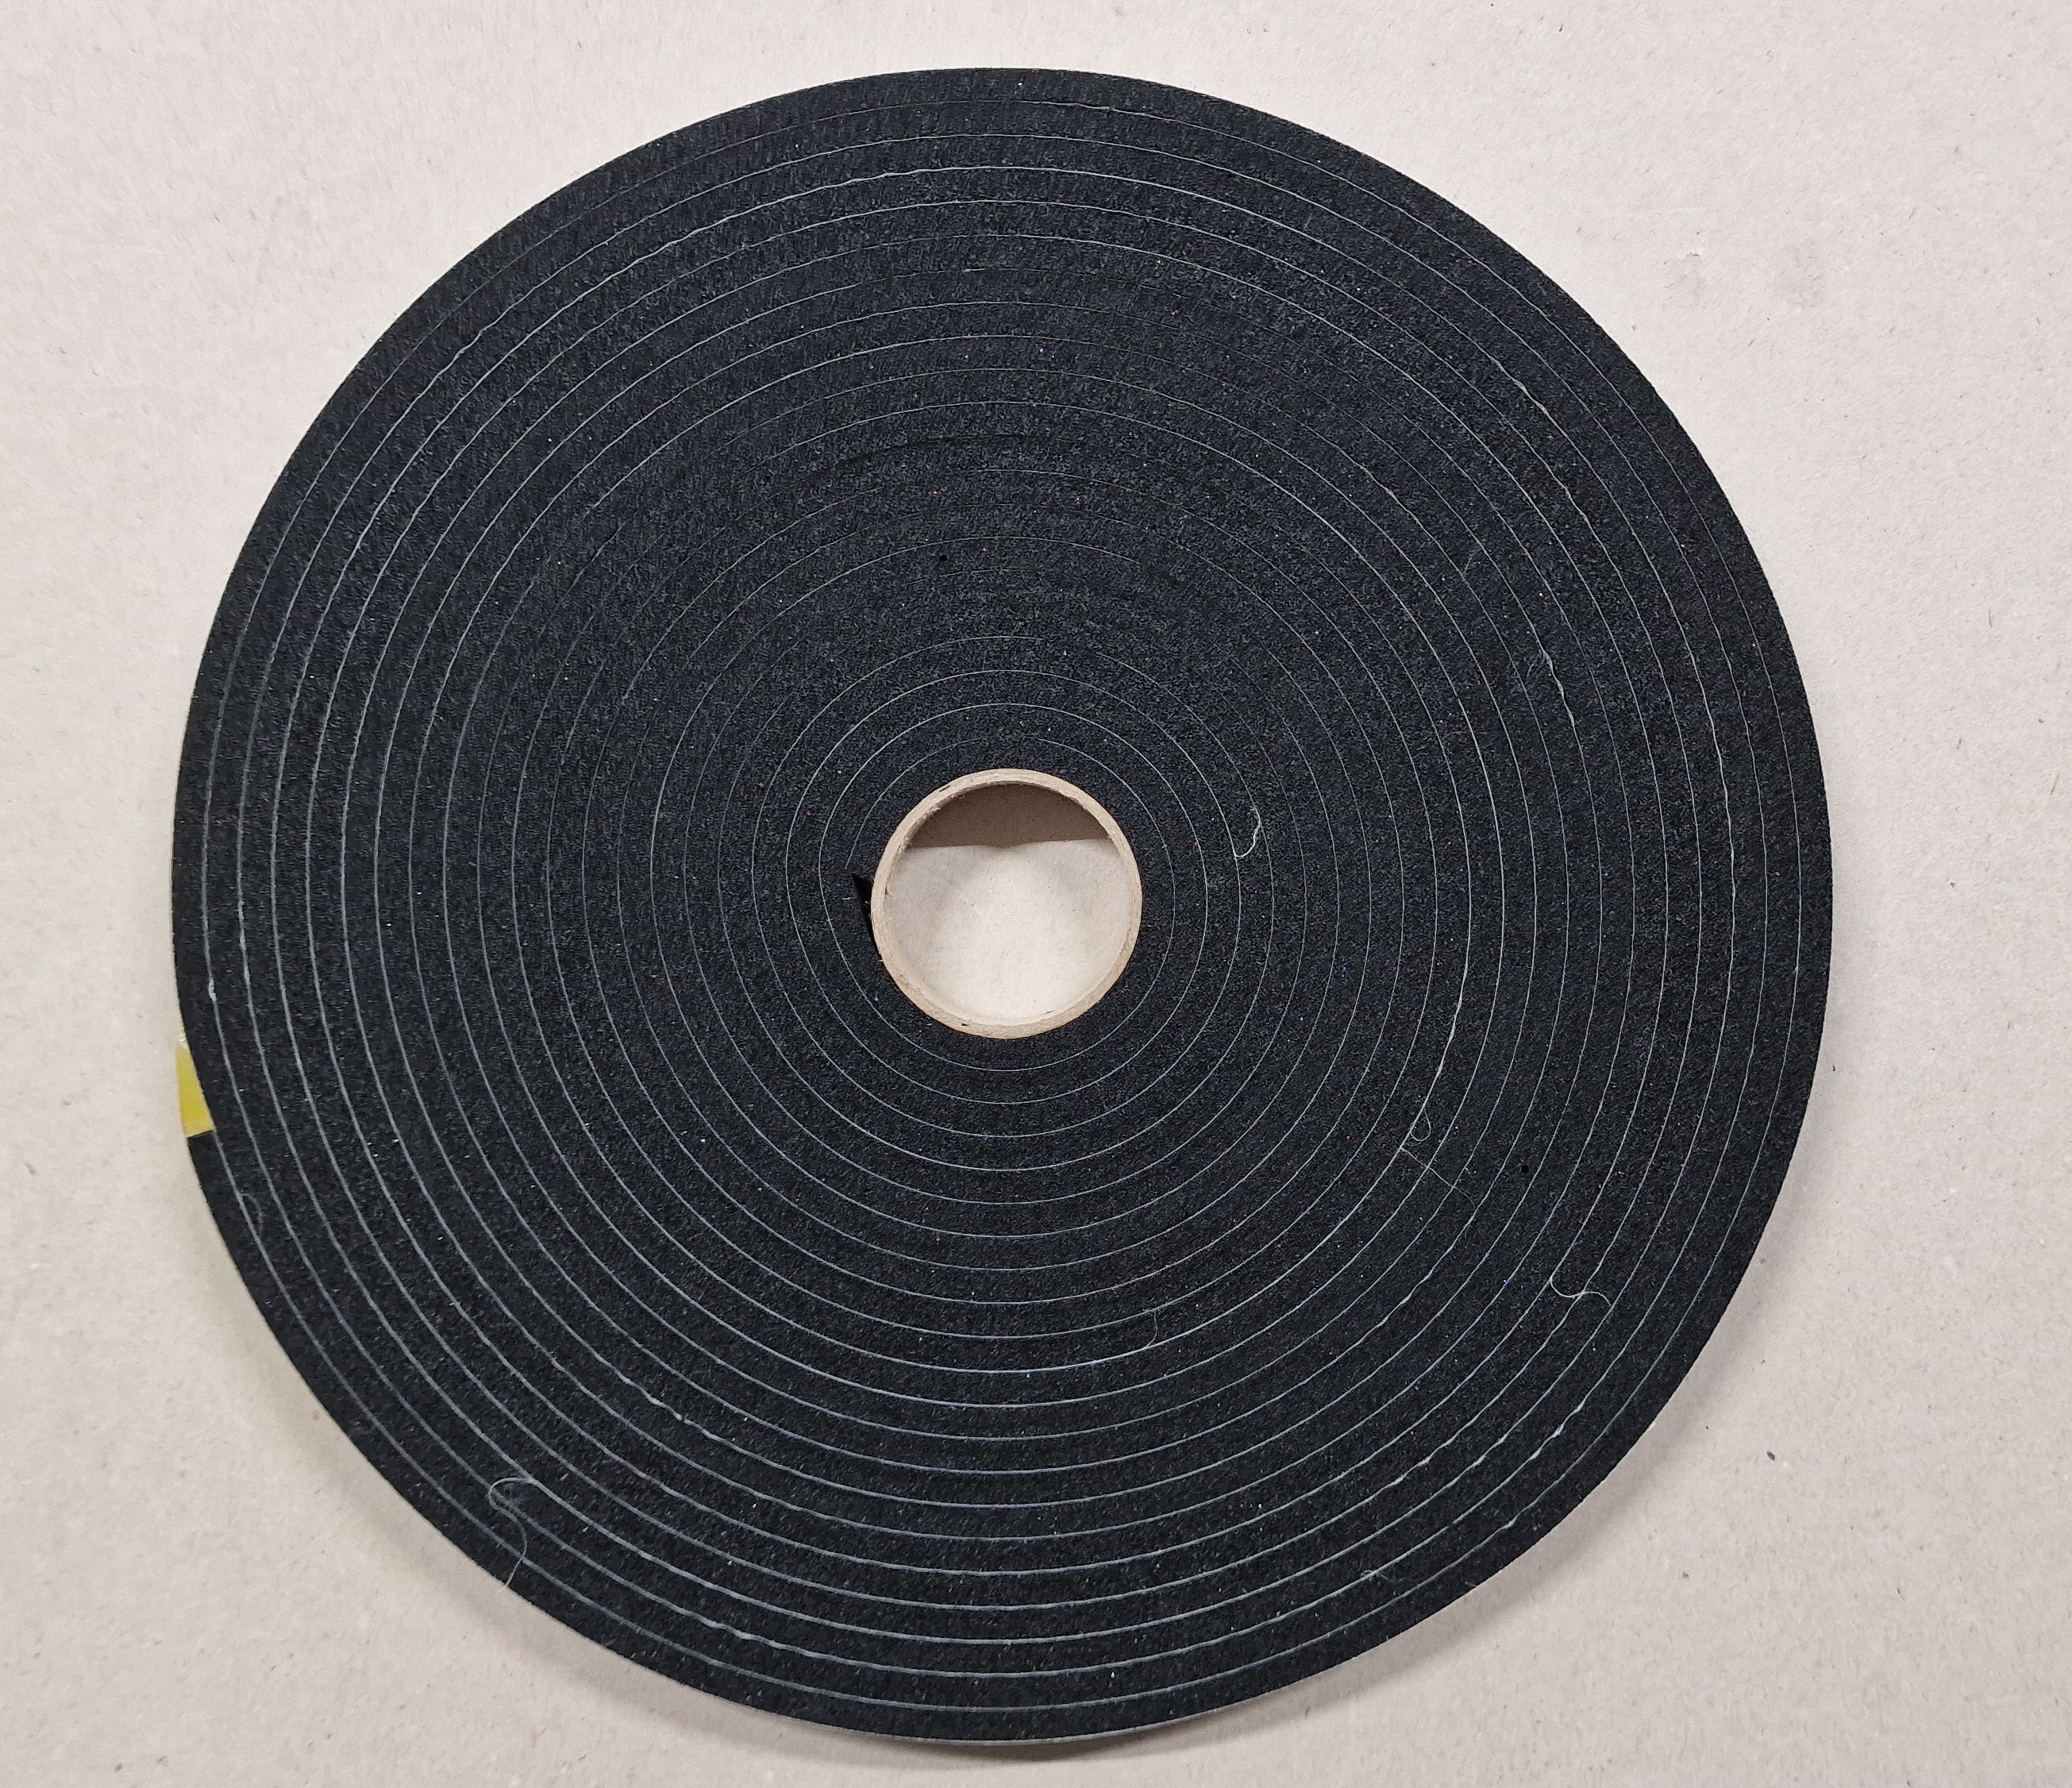 Dichtungsband 15x5mm für Filter oder Wärmetauscher schwarz, Rolle 10m